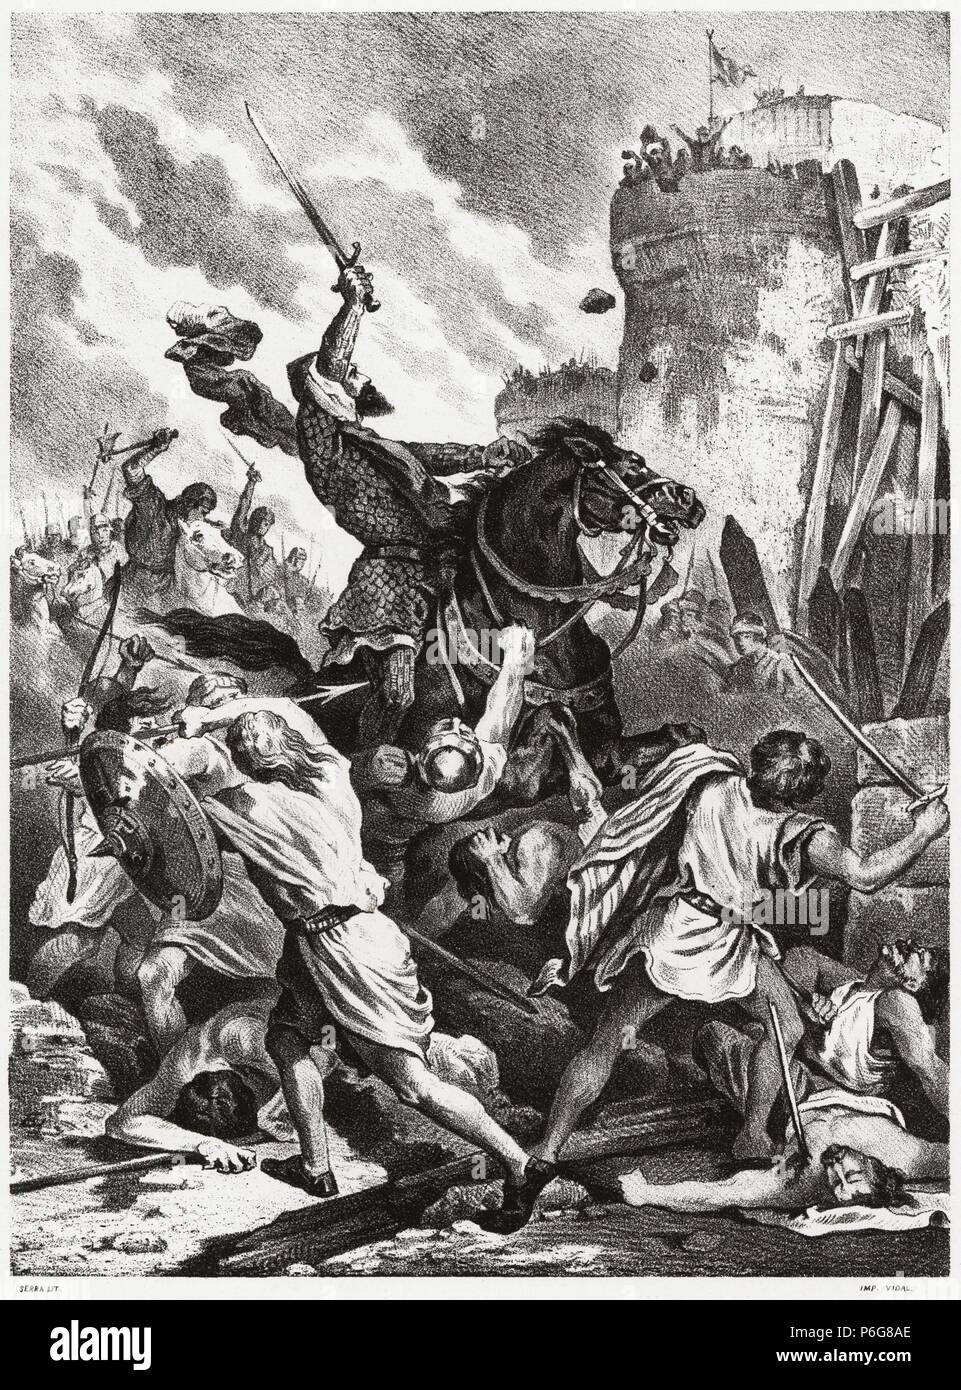 Historia de España. Toma de Valencia por Rodrigo Díaz de Vivar, el Cid Campeador, en el año 1094. Grabado de 1872. Foto Stock